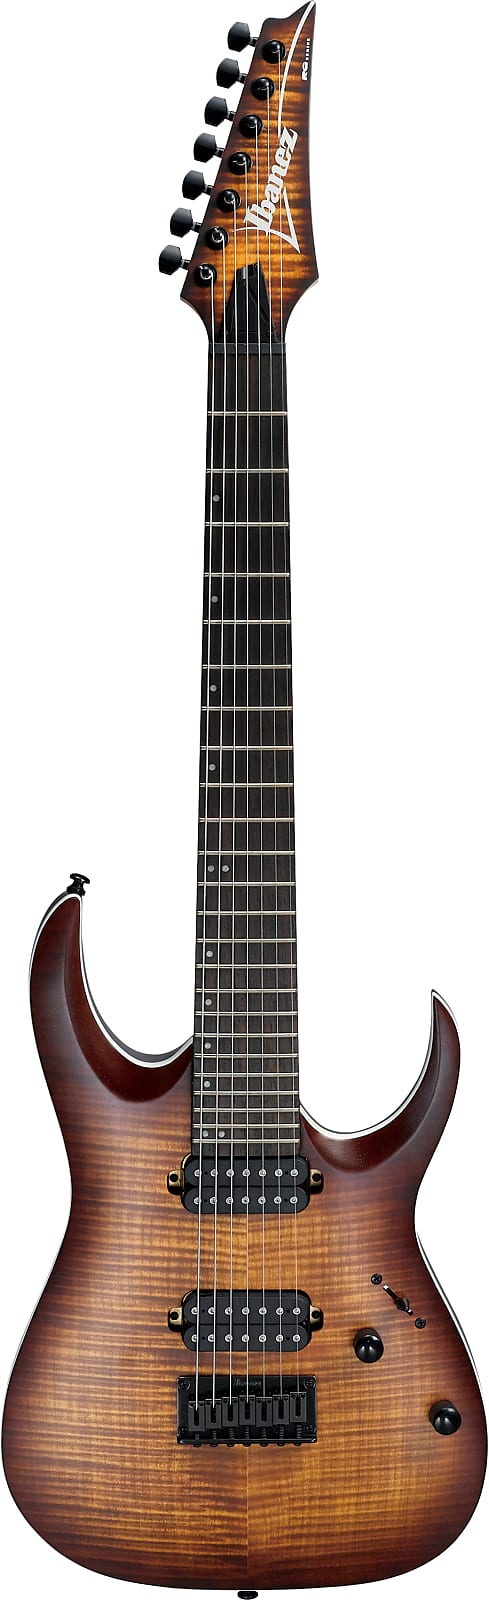 Ibanez RGA742FM-DEF RGA-Series E-Guitar 7 String Dragon Eye Burst Flat,  PRE-ORDER! on OhGuitar.com